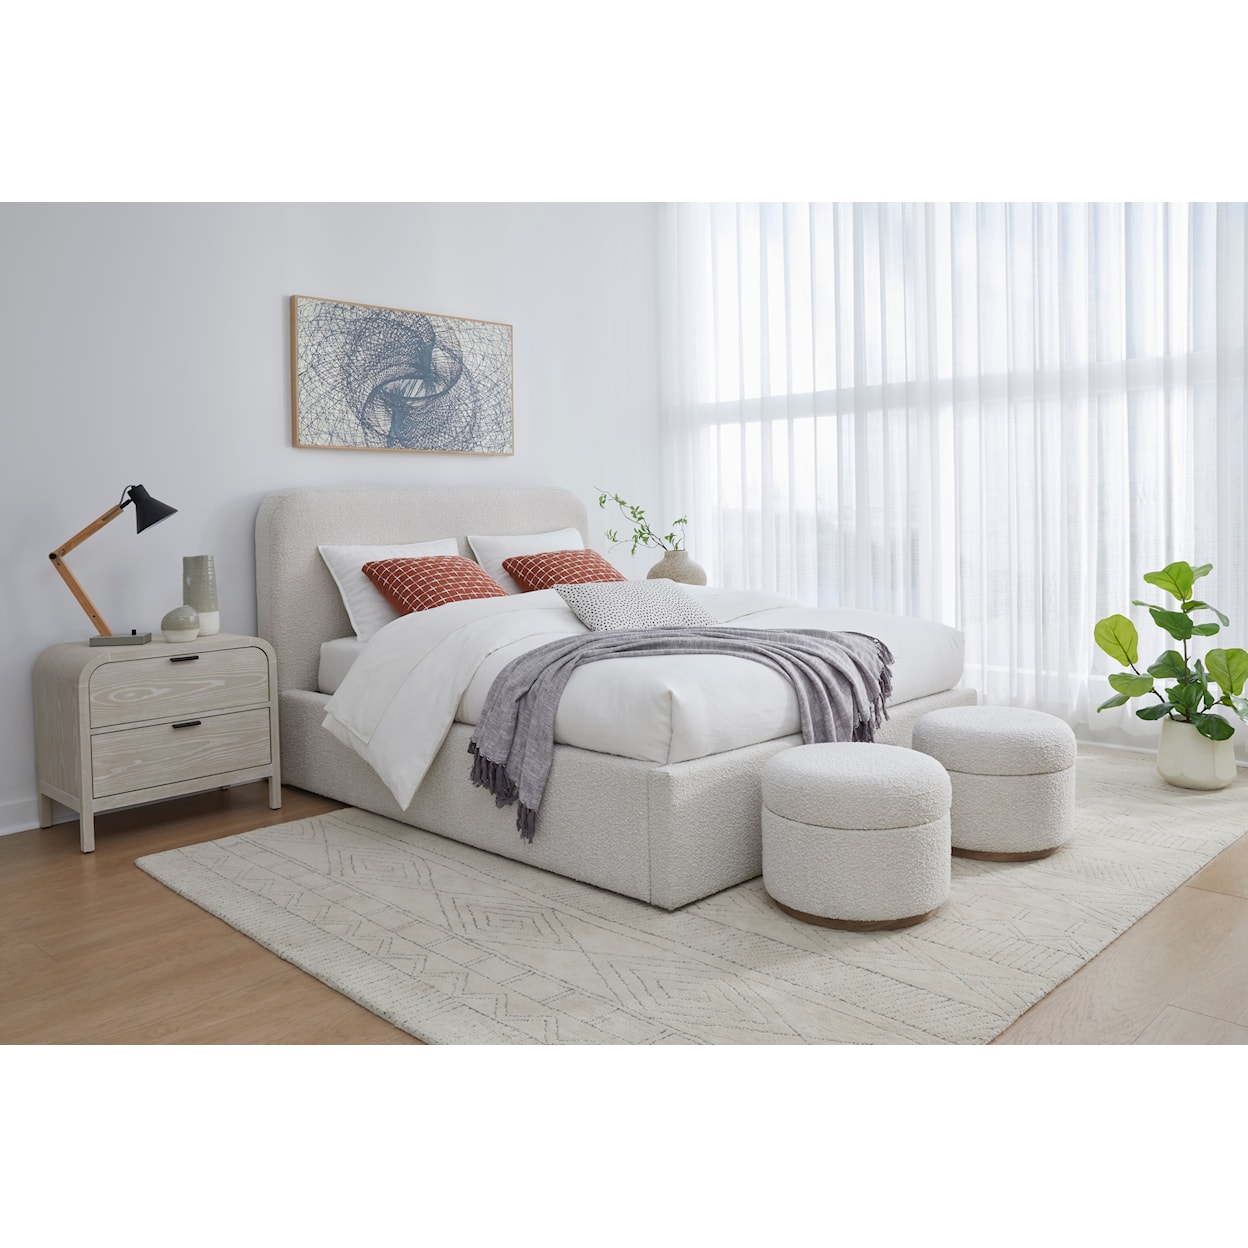 Modus International Off-White Full Upholstered Platform Bed